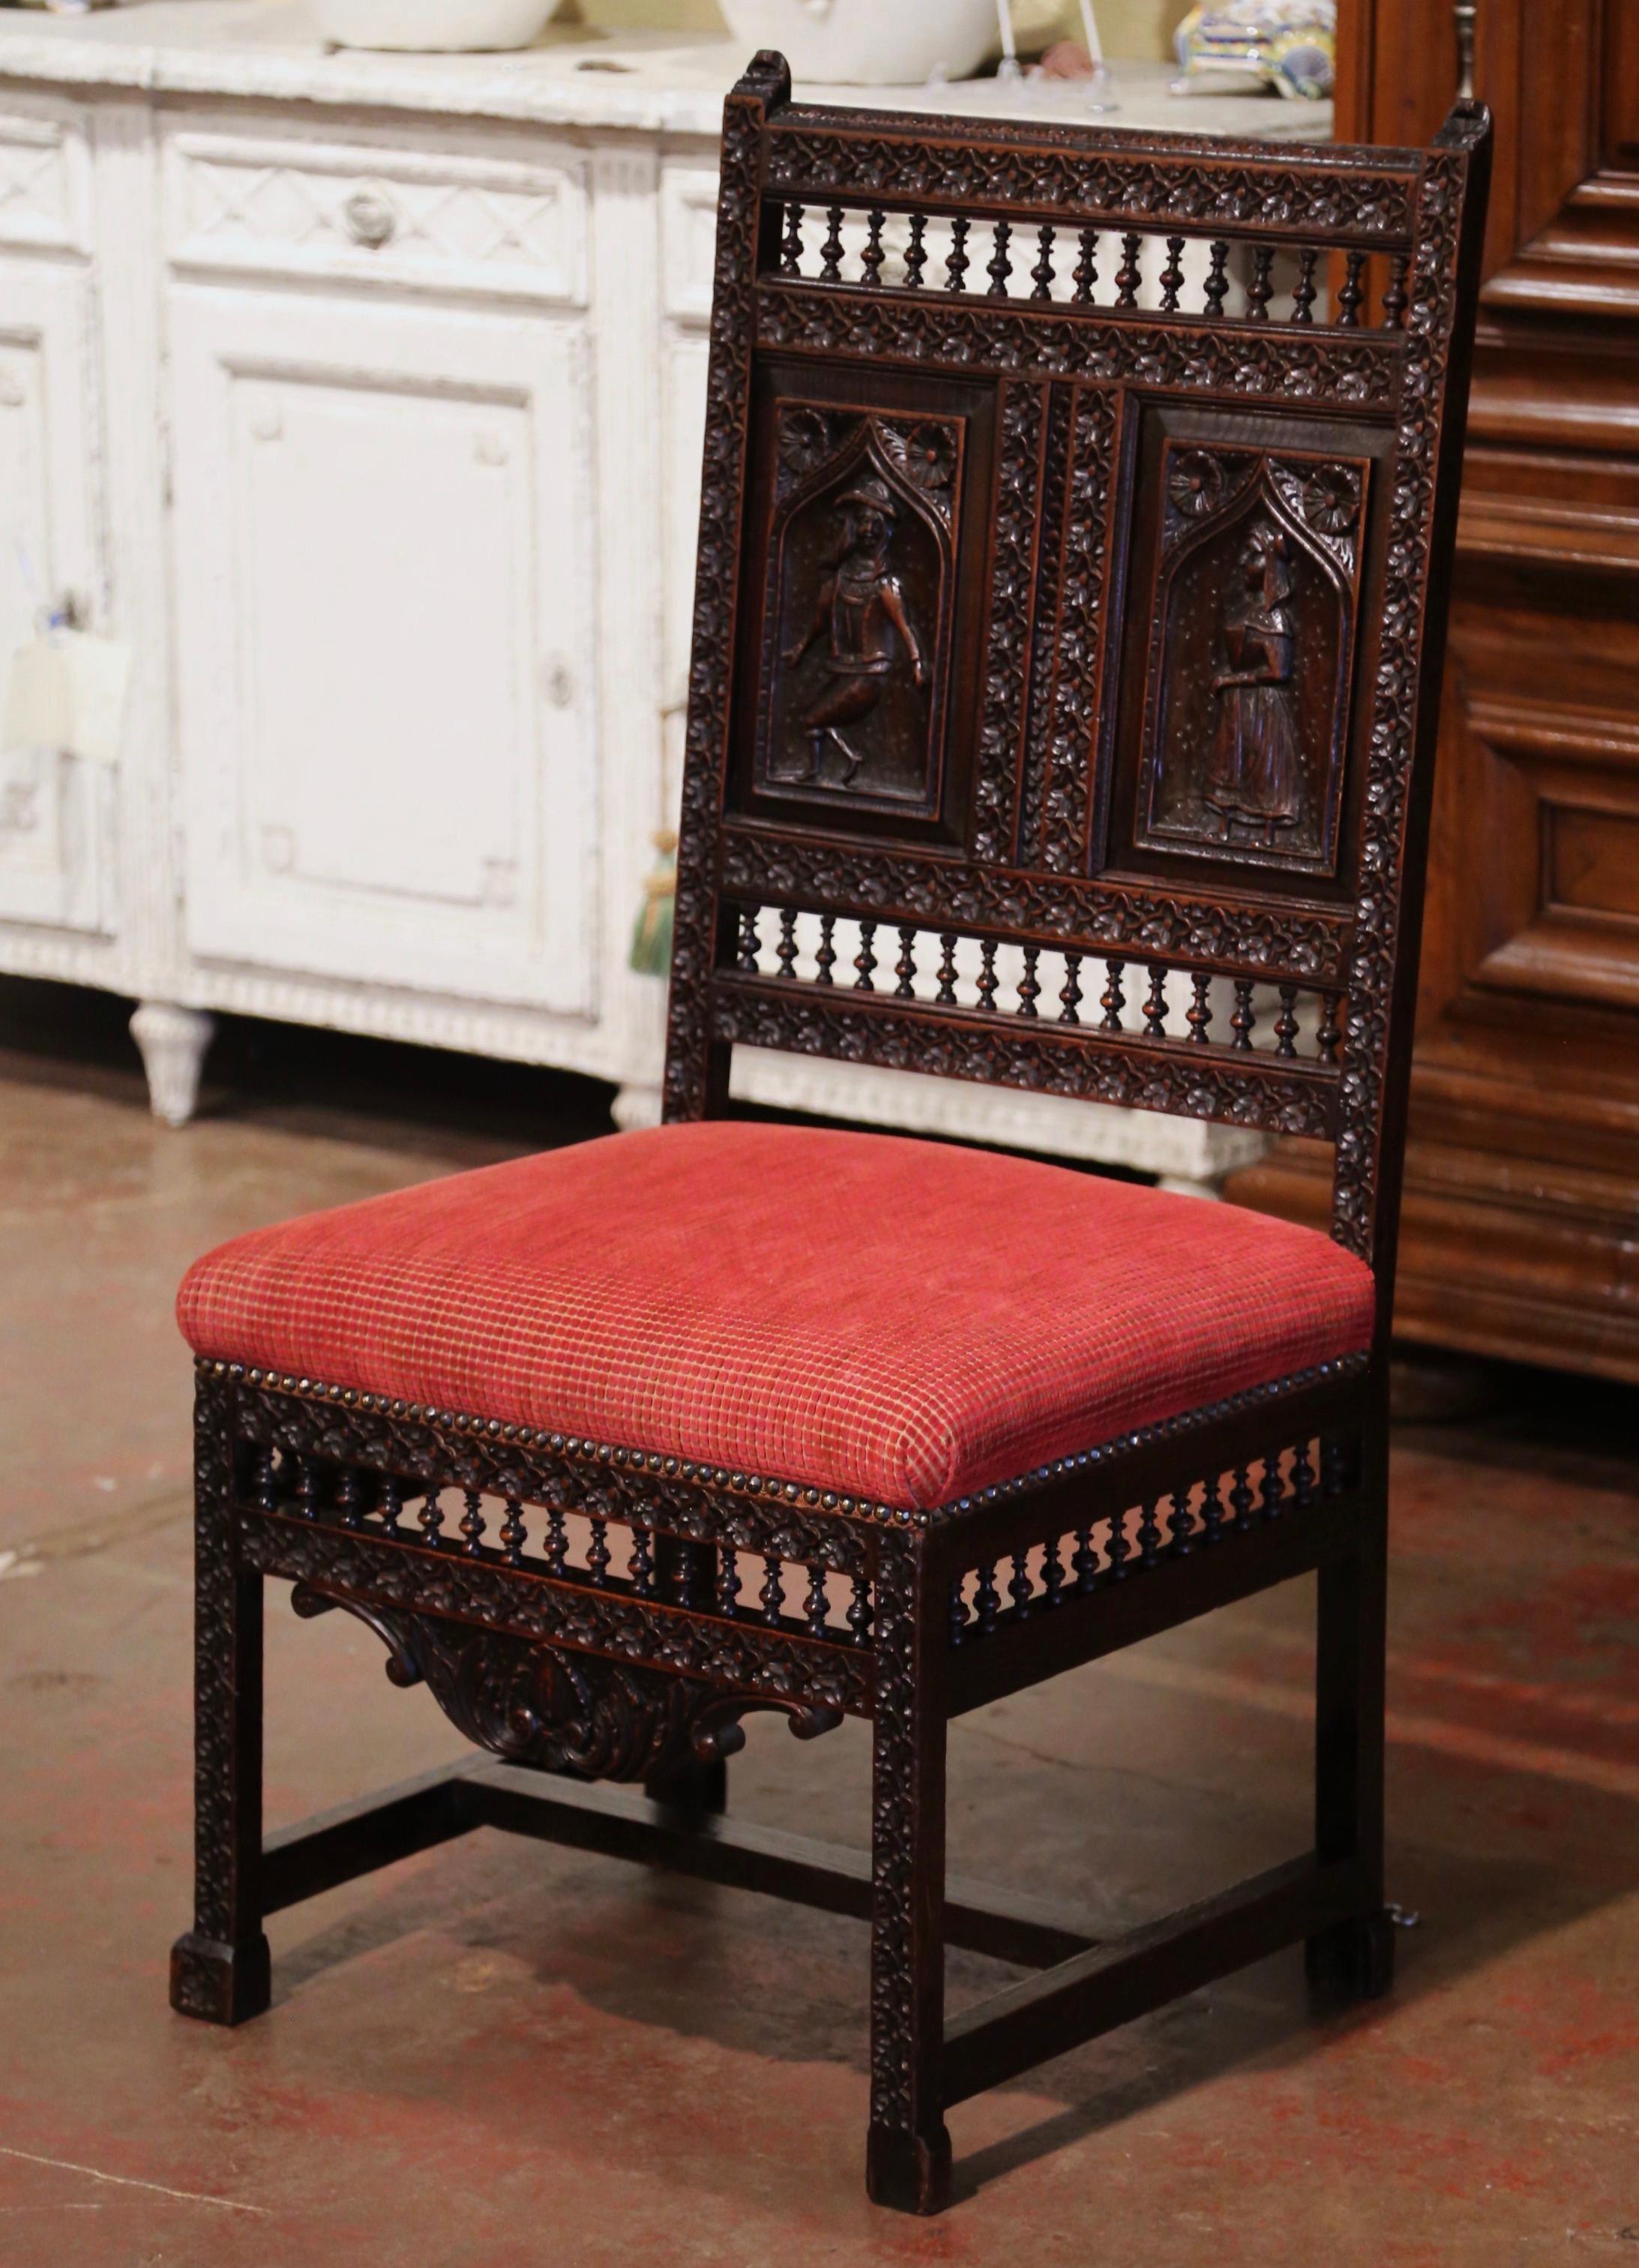 Décorez un couloir, une chambre ou un bureau avec cette élégante chaise ancienne. Fabriquée en Bretagne (France) vers 1870, cette grande chaise repose sur des pieds droits sculptés se terminant par des pieds carrés au-dessus d'un tablier festonné